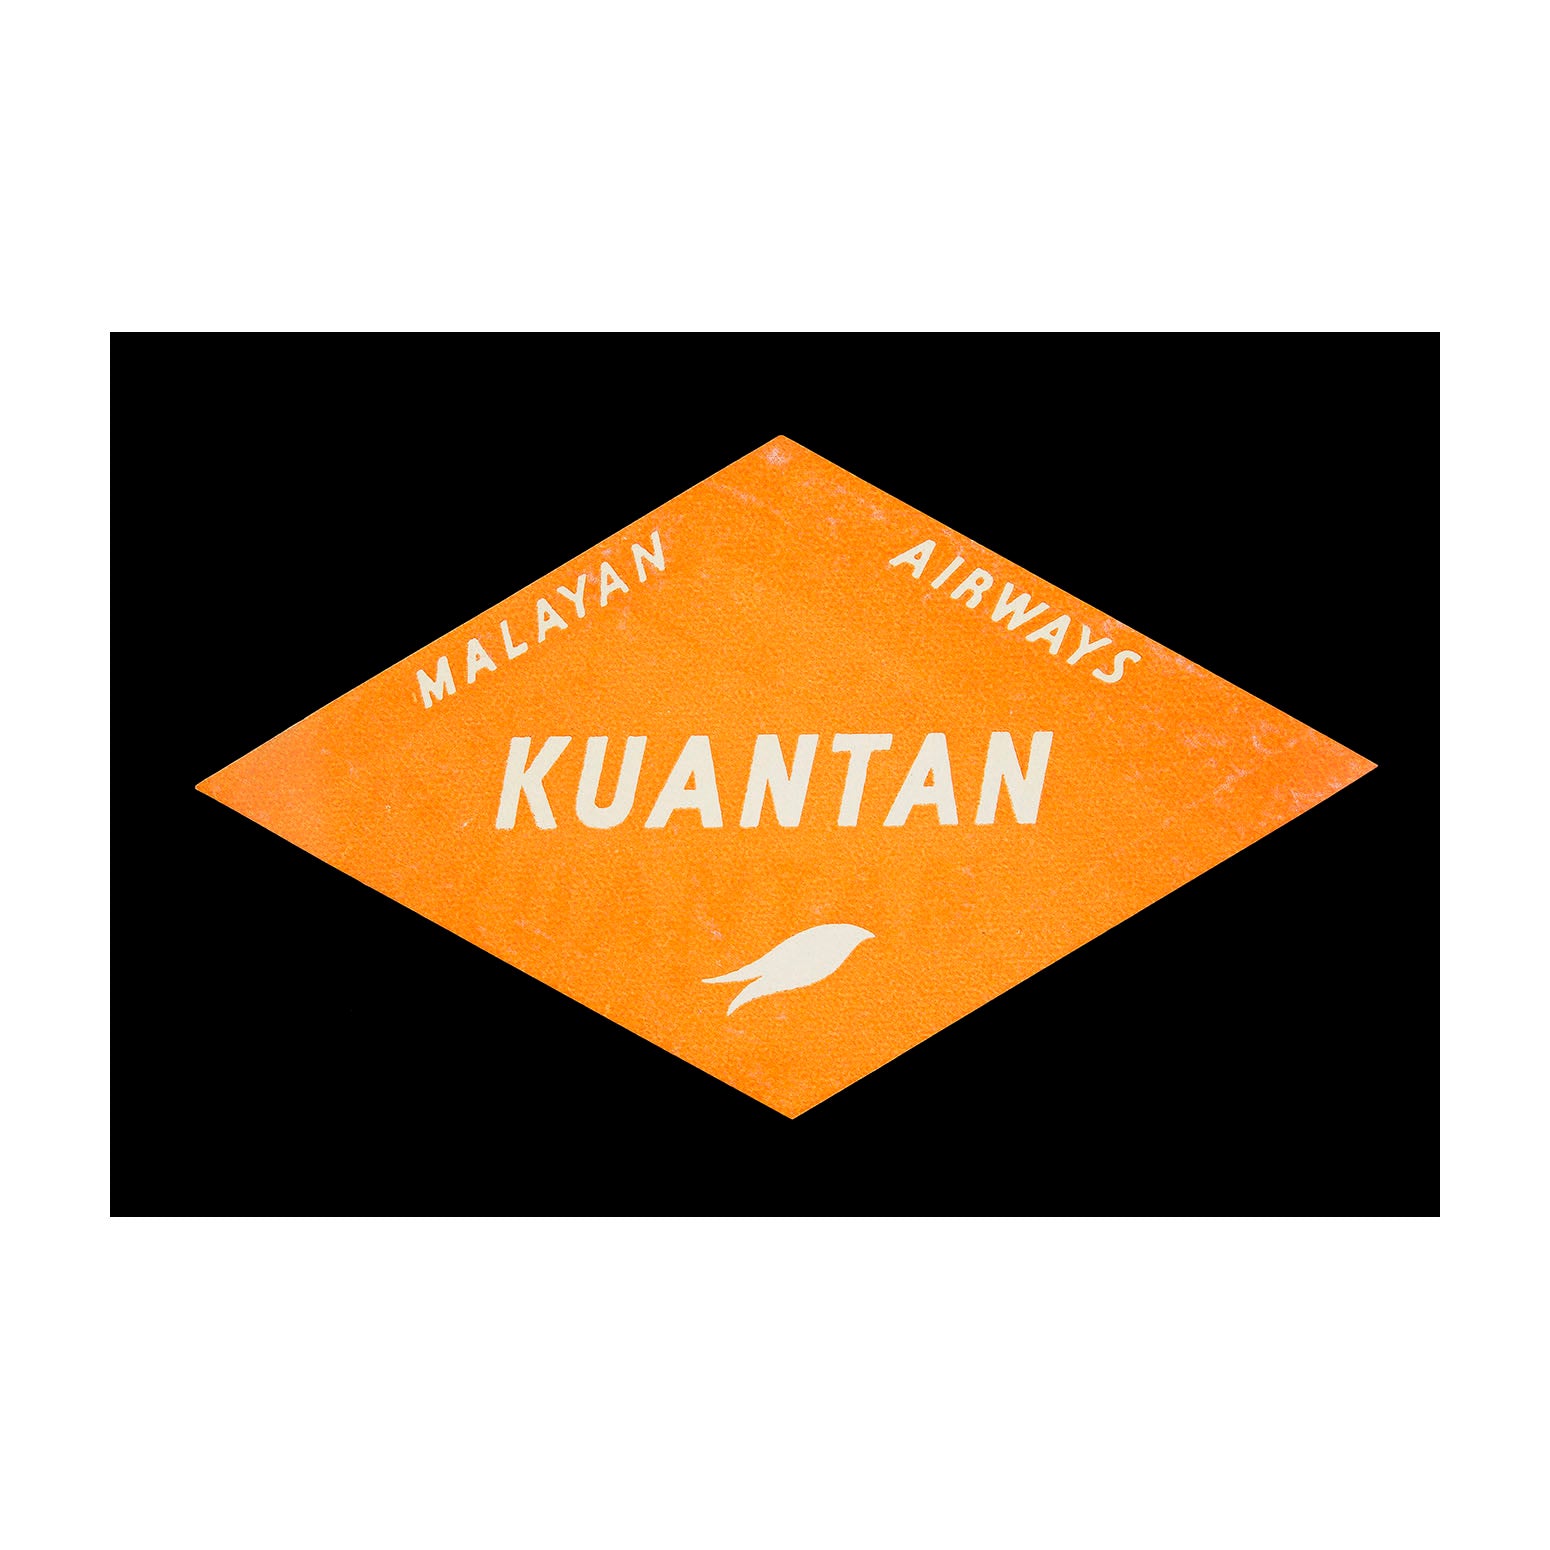 Malayan Airways. Kuantan (Luggage Label)